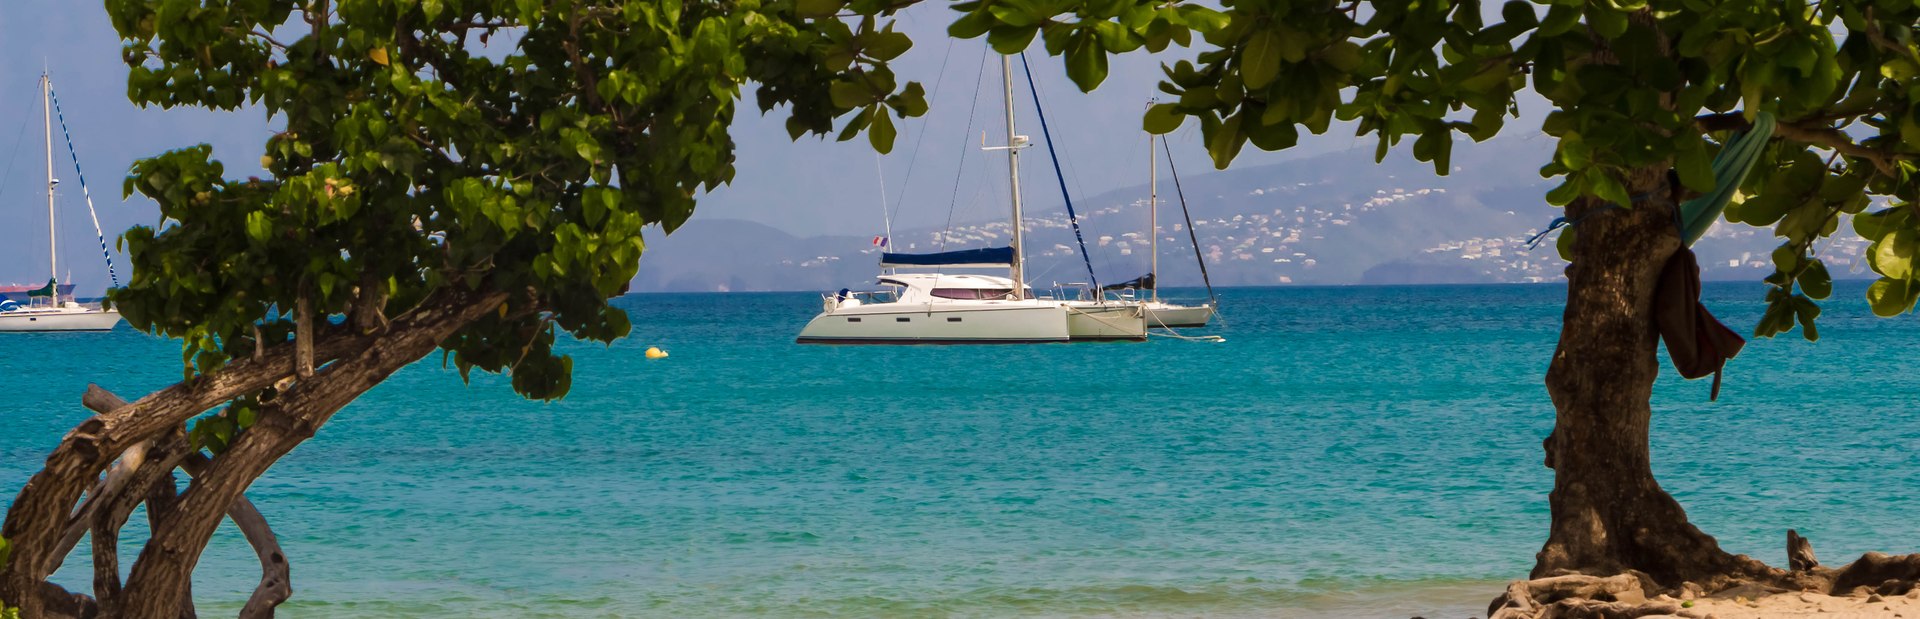 Martinique Sailing Adventure & Cabin Charter